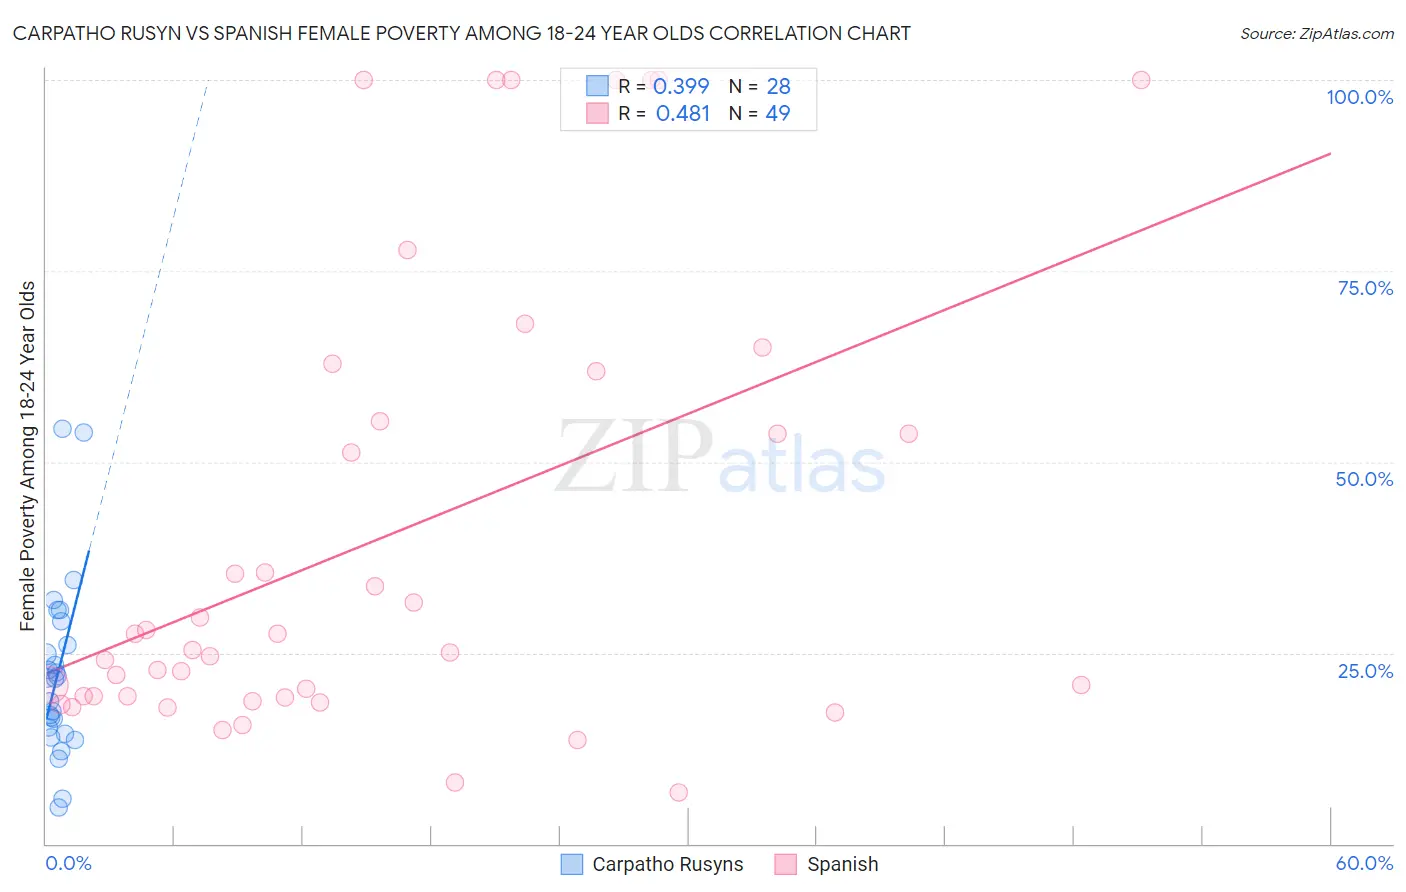 Carpatho Rusyn vs Spanish Female Poverty Among 18-24 Year Olds